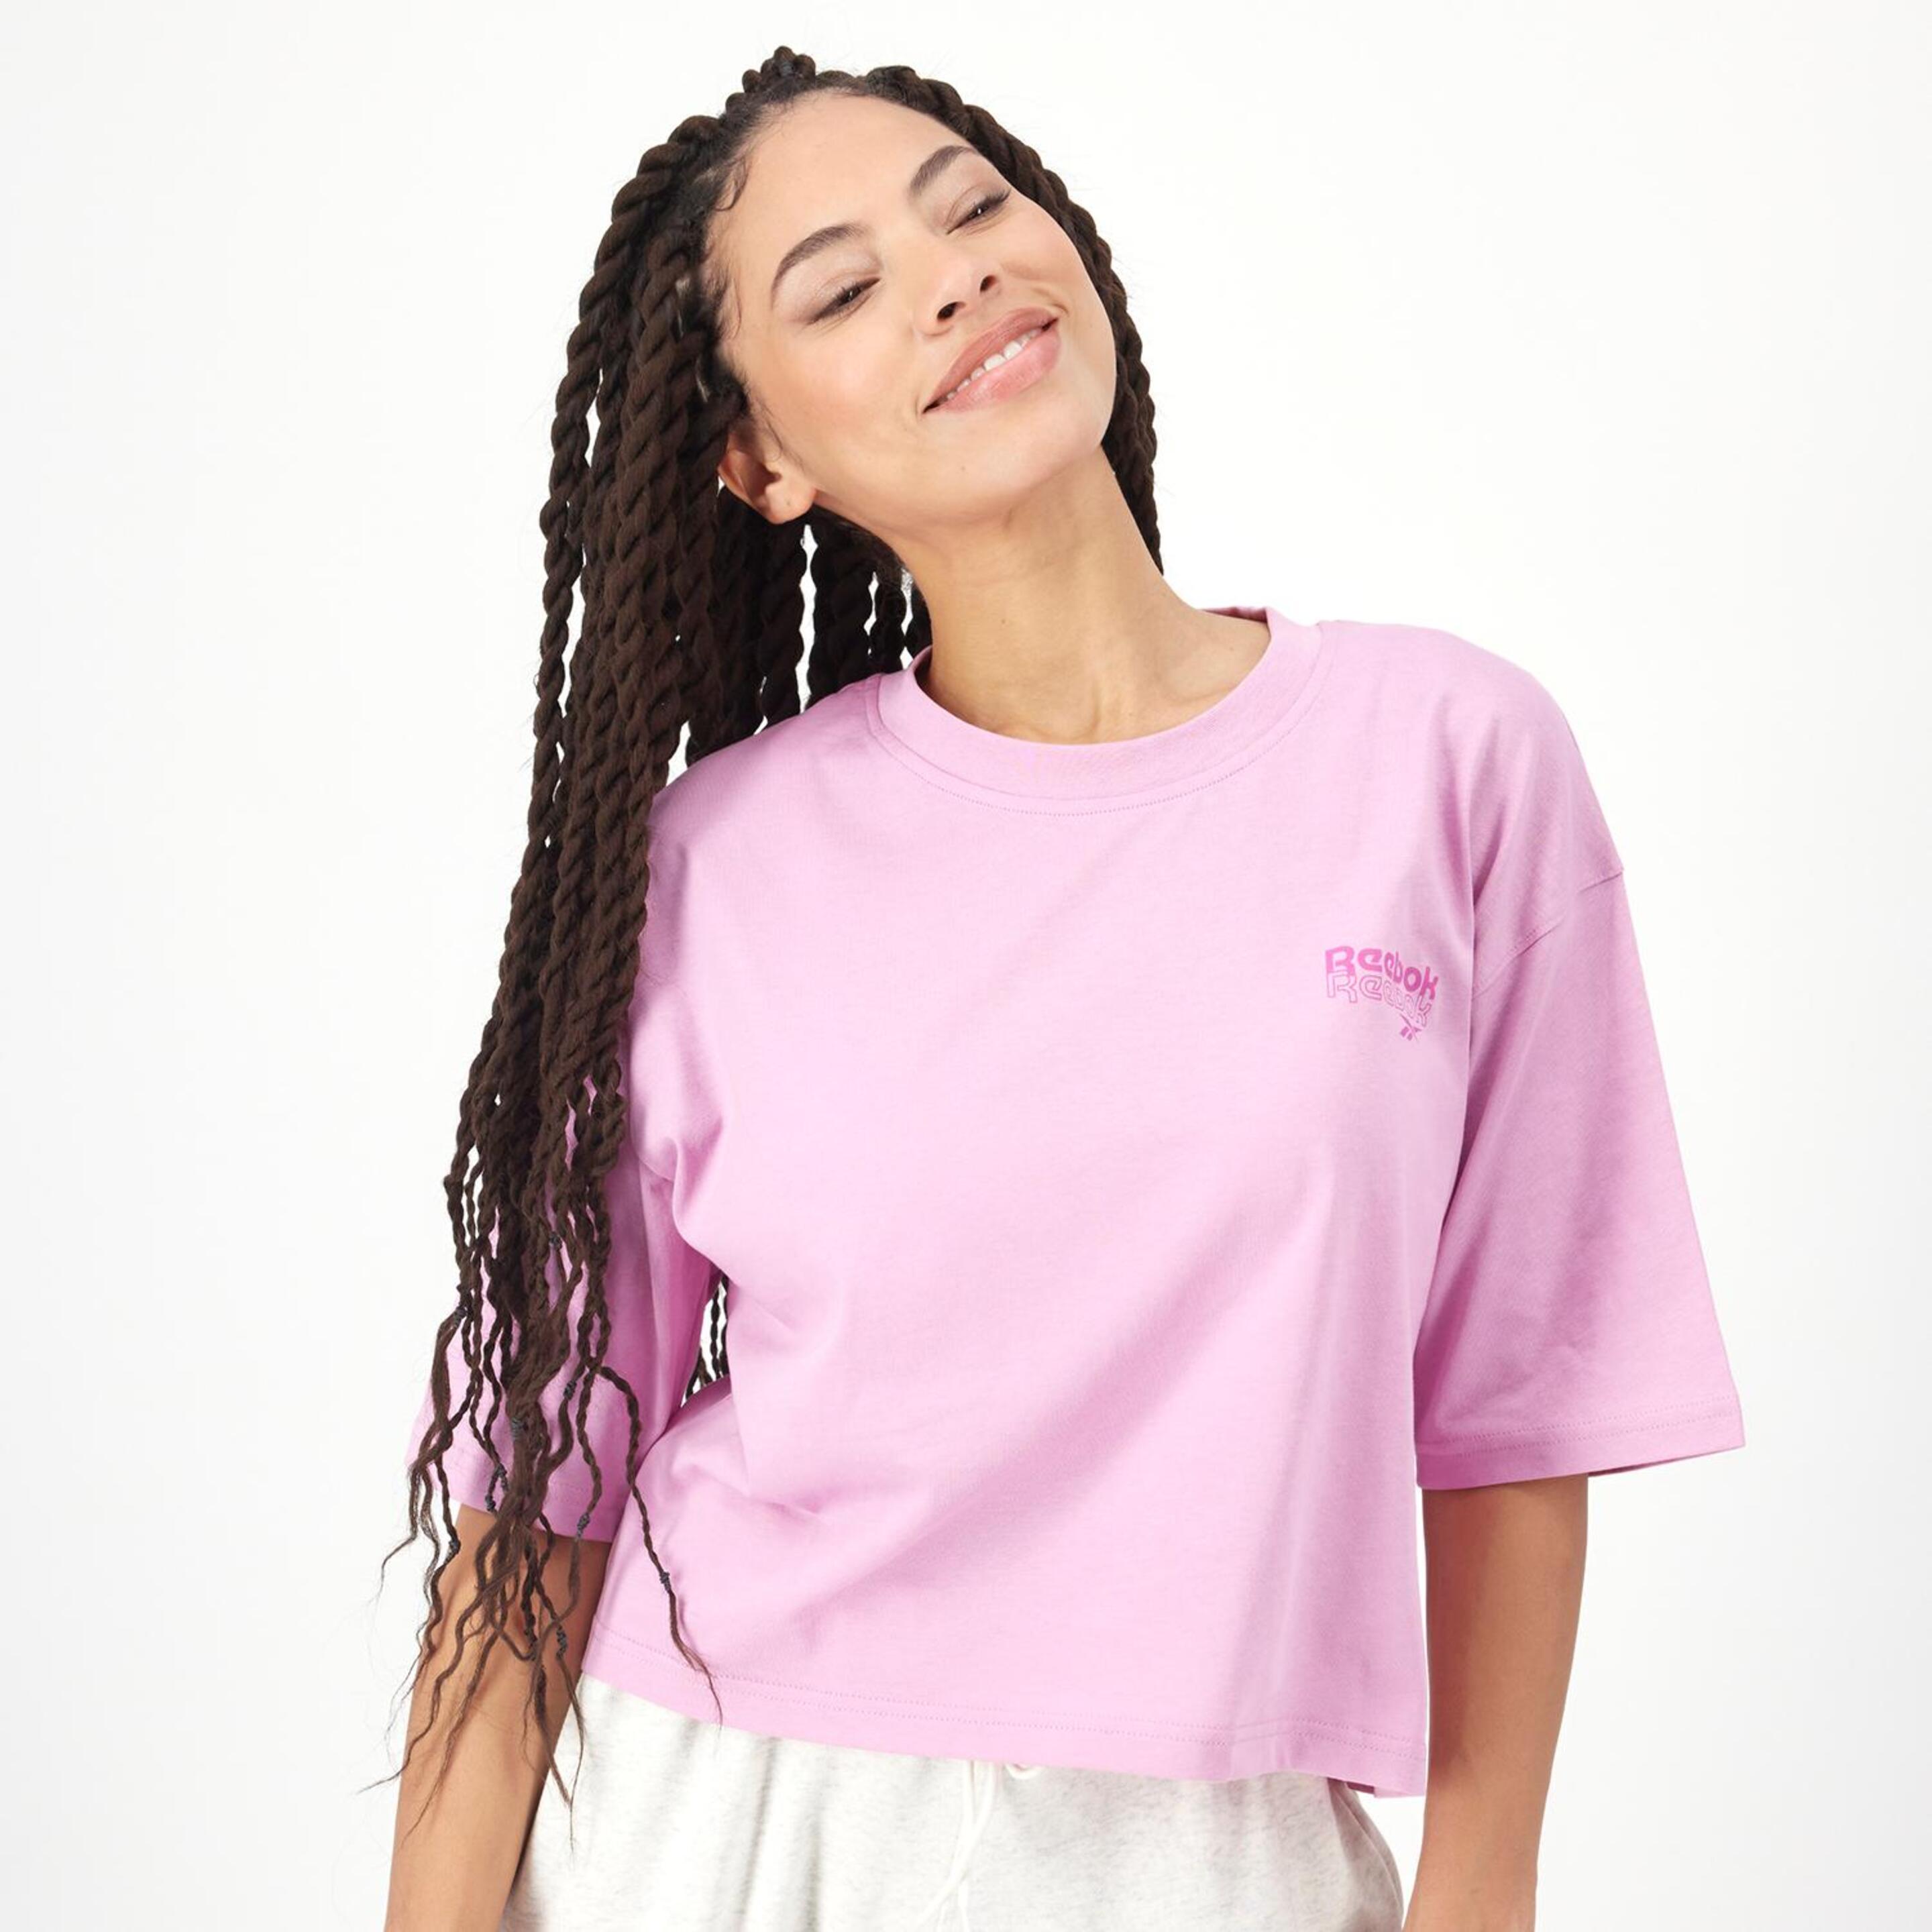 Reebok Rie - rosa - Camiseta Boxy Mujer